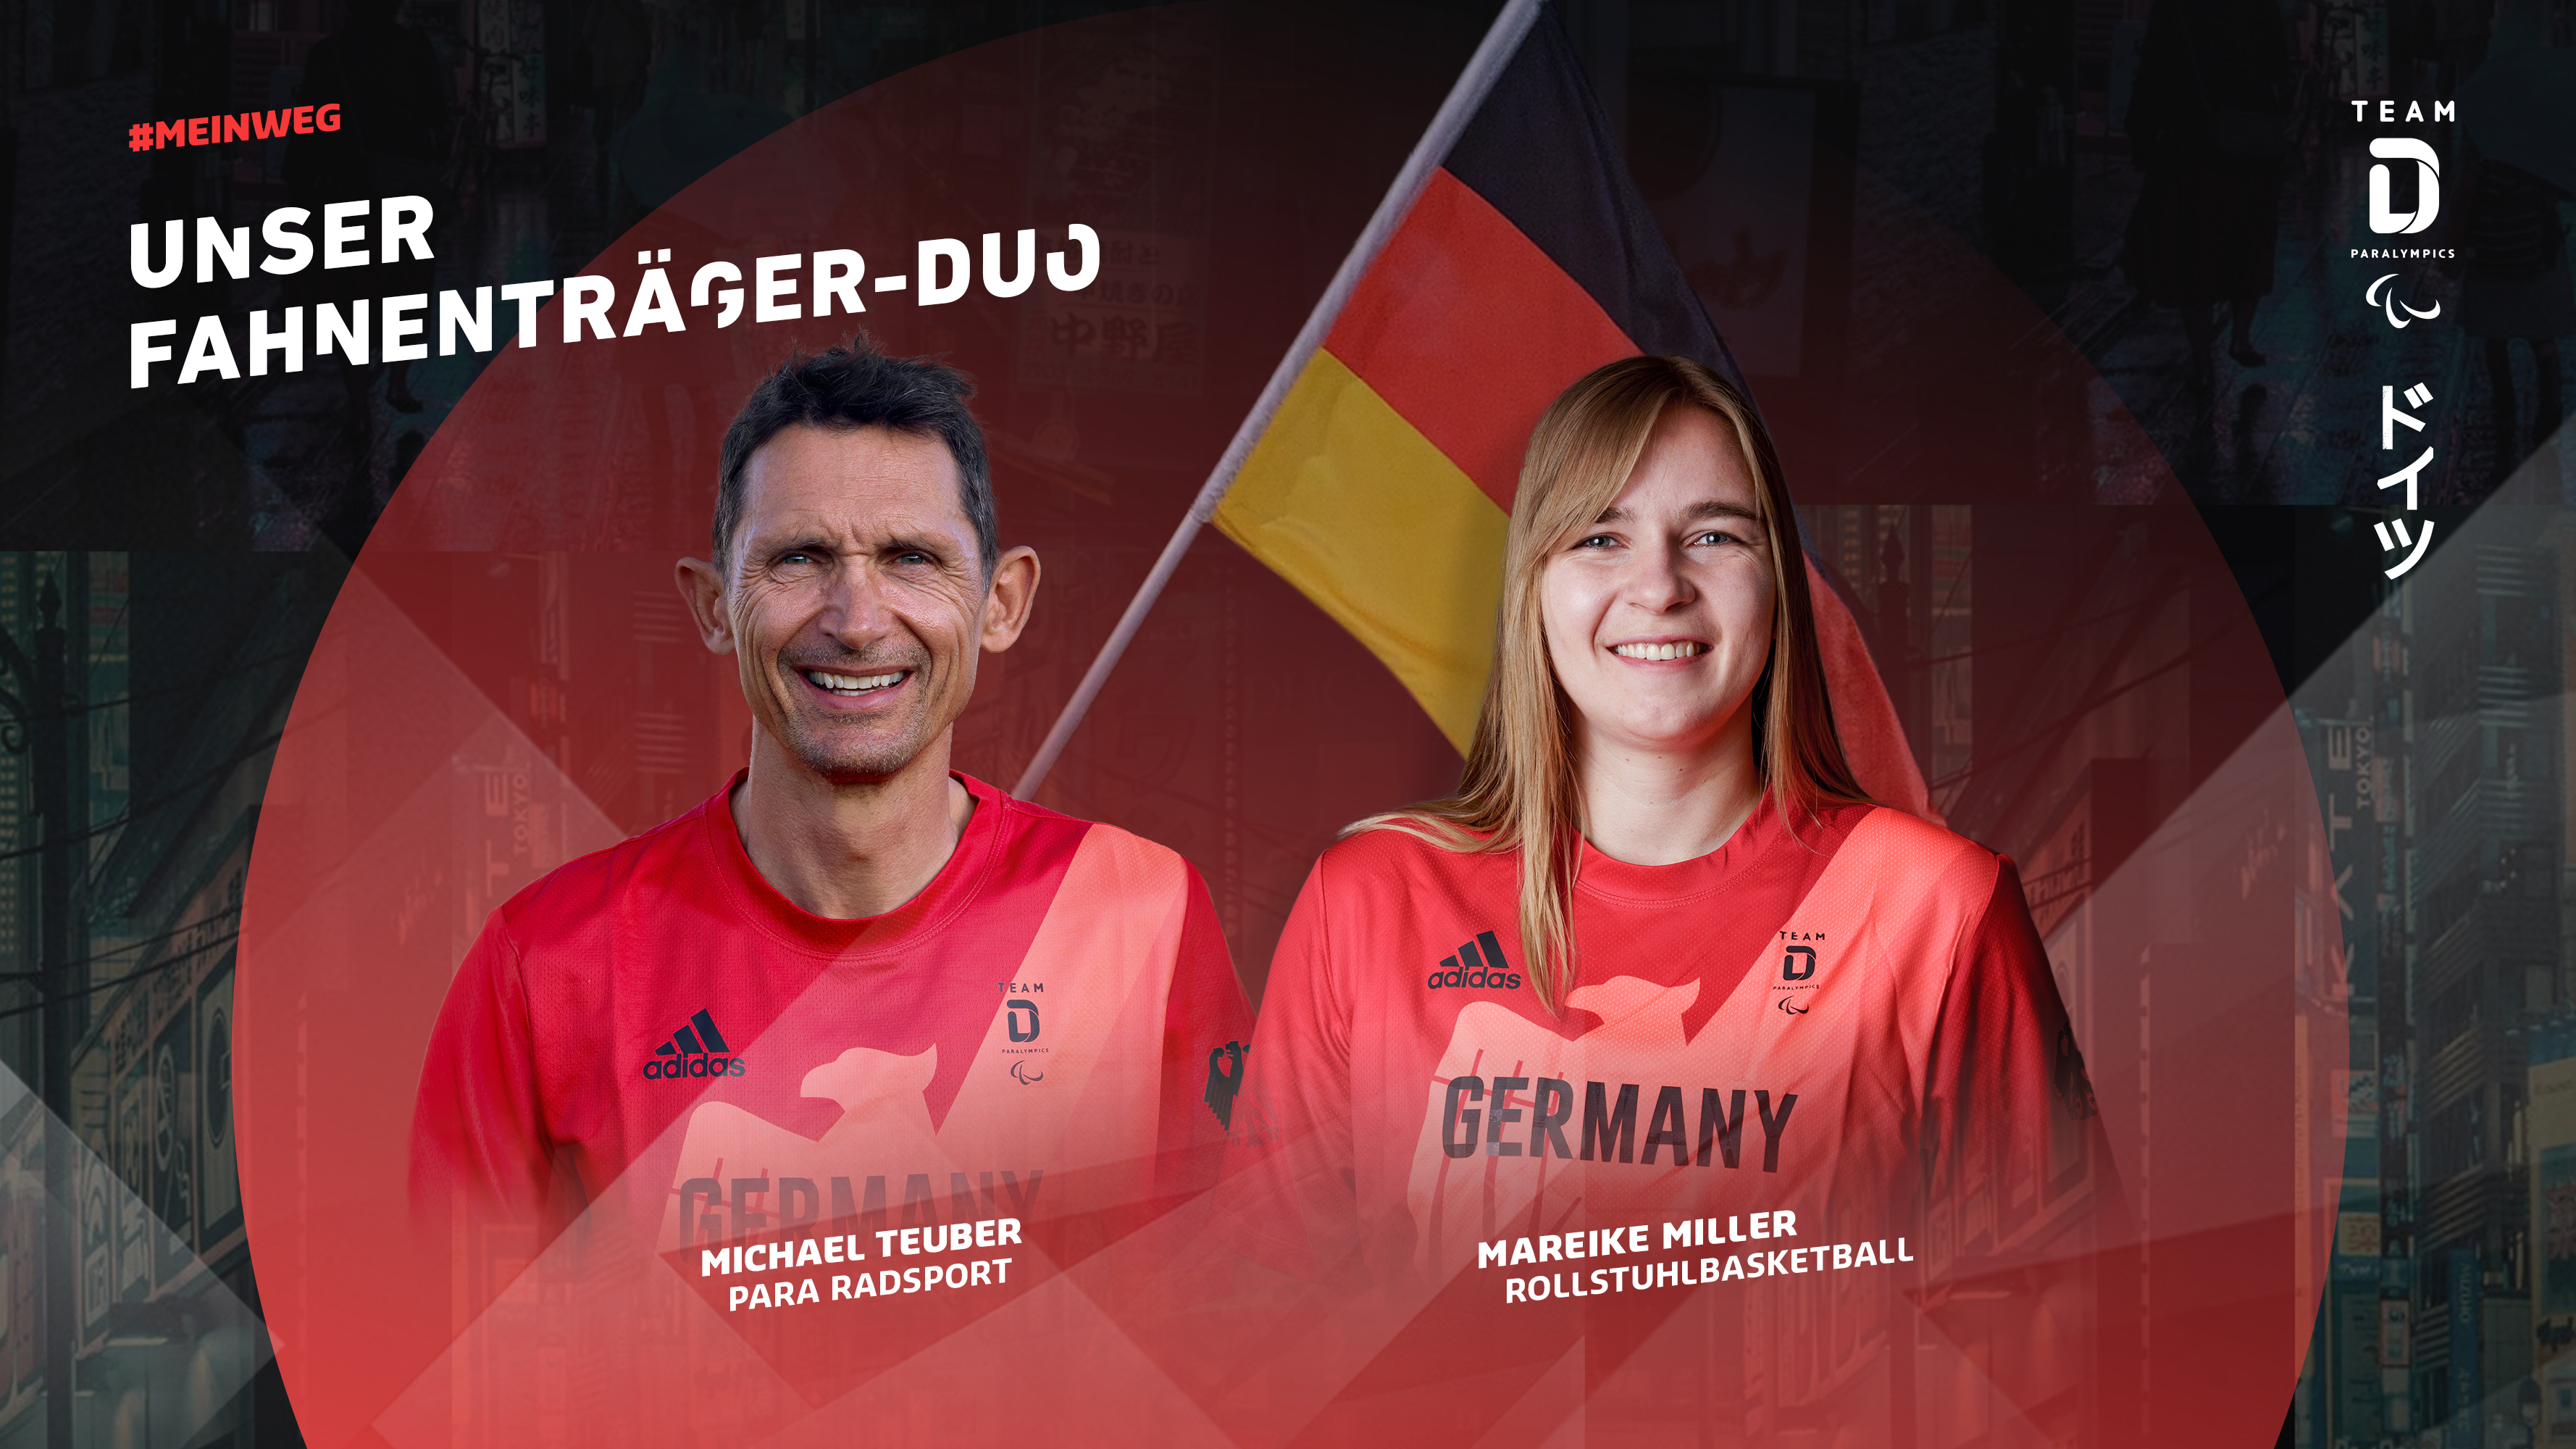 Das deutsche Fahnentraeger-Duo für die Paralympischen Spiele in Tokio | Foto: DBS